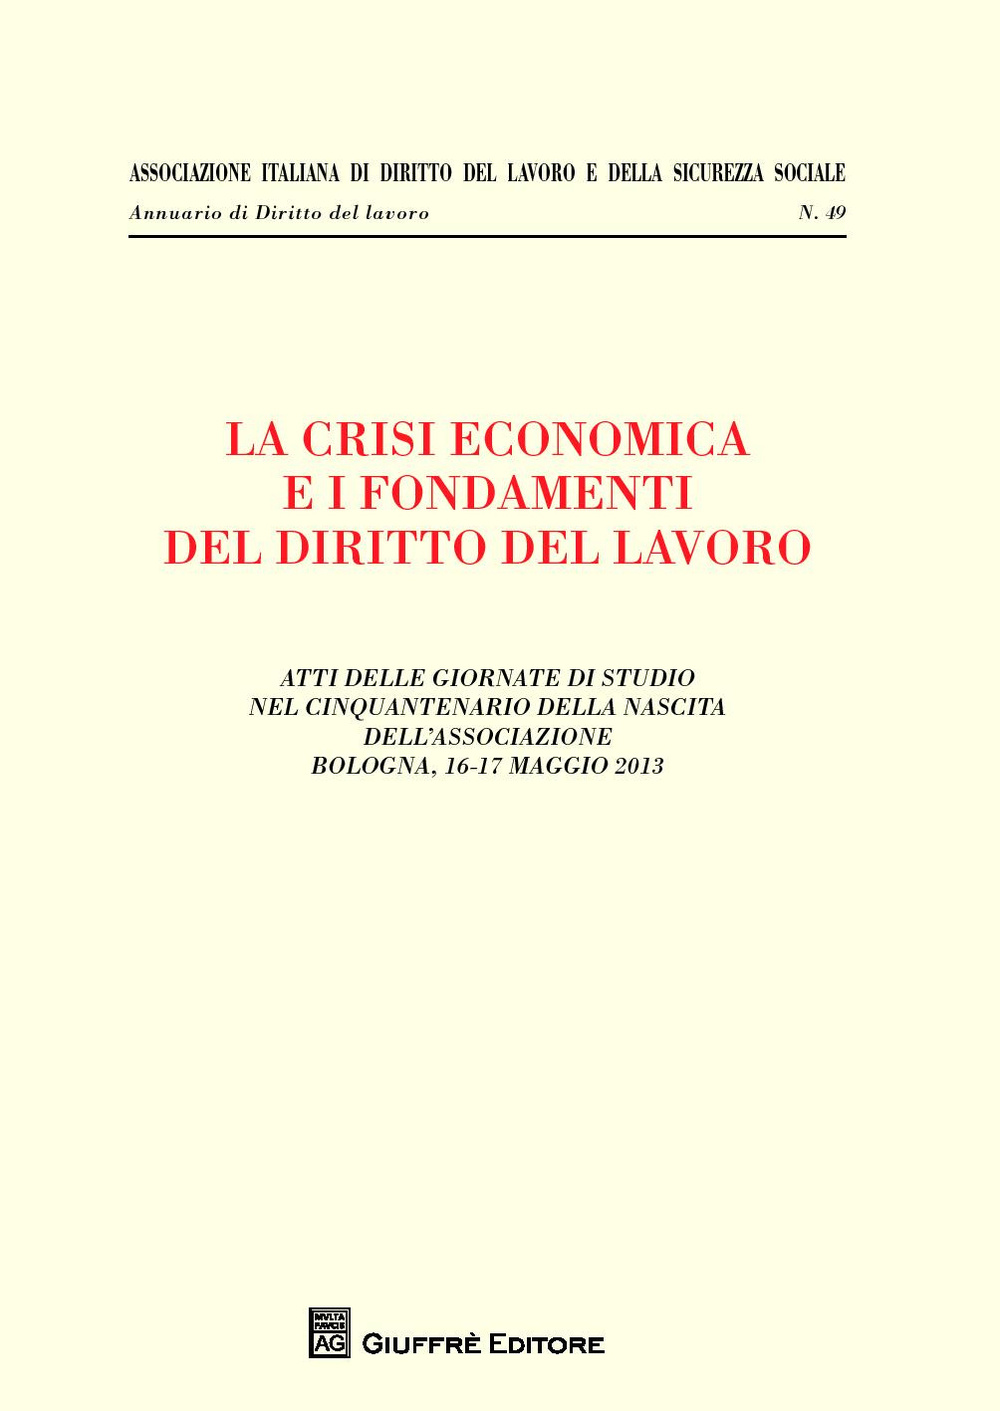 La crisi economica e i fondamenti del diritto del lavoro. Atti delle giornate di studio nel cinquantenario della nascita dell'associazione (Bologna, maggio 2013)